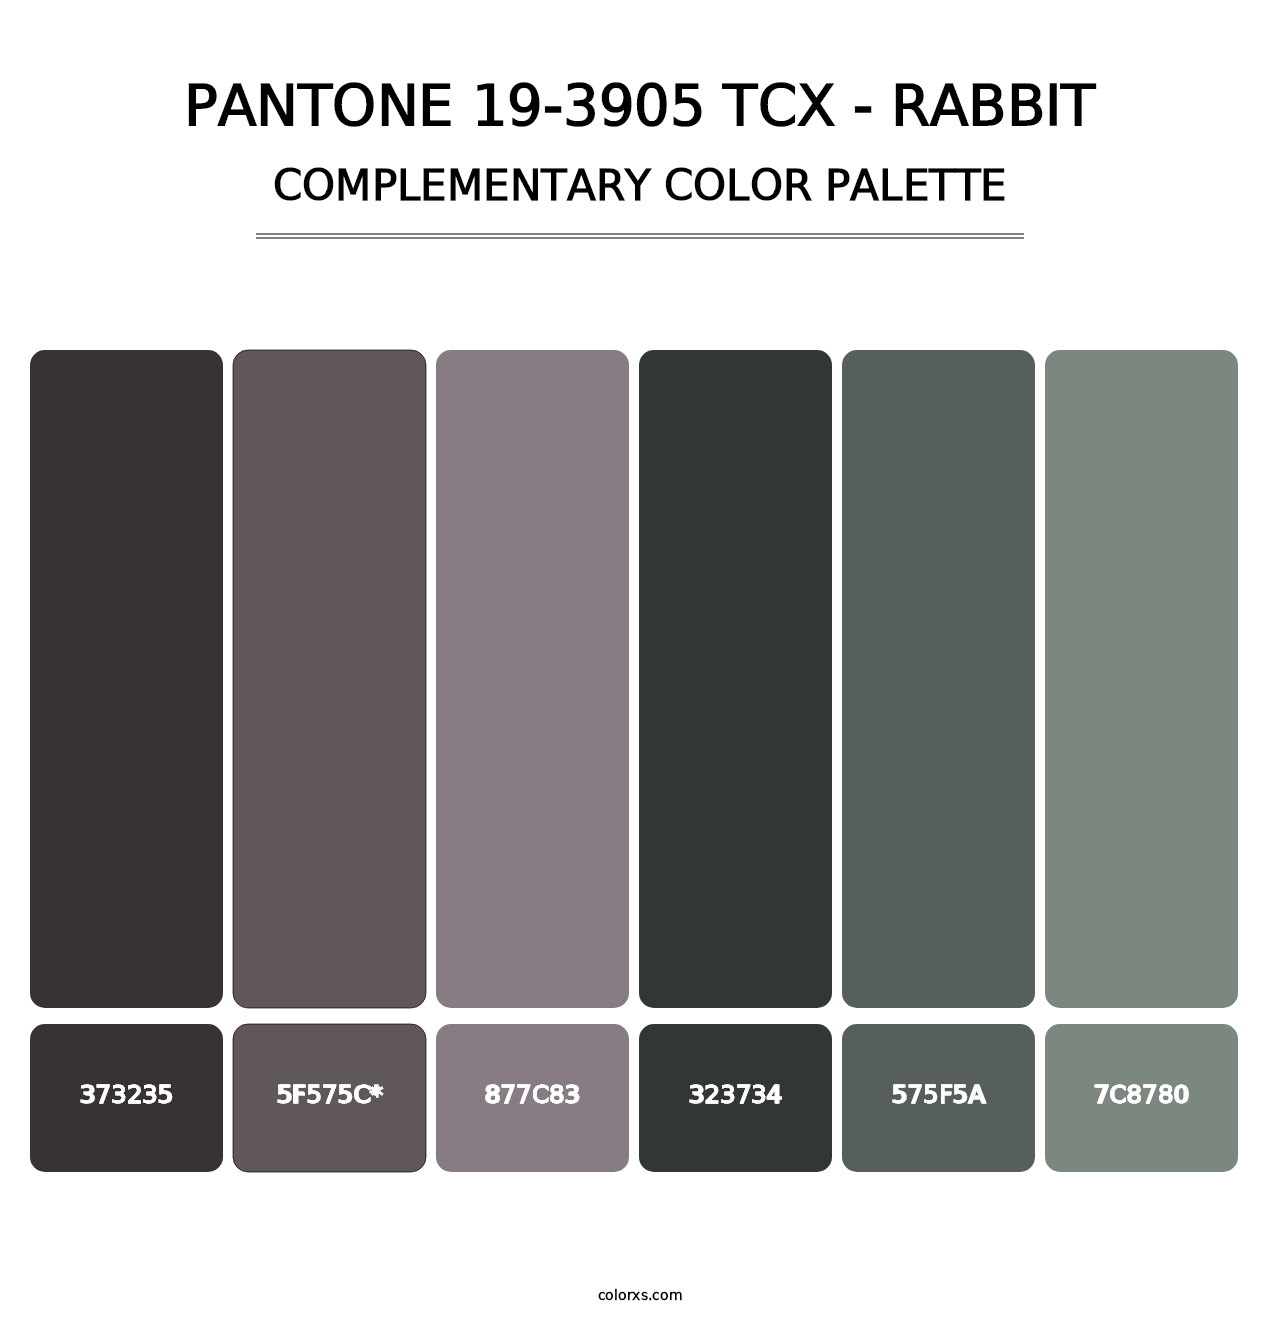 PANTONE 19-3905 TCX - Rabbit - Complementary Color Palette